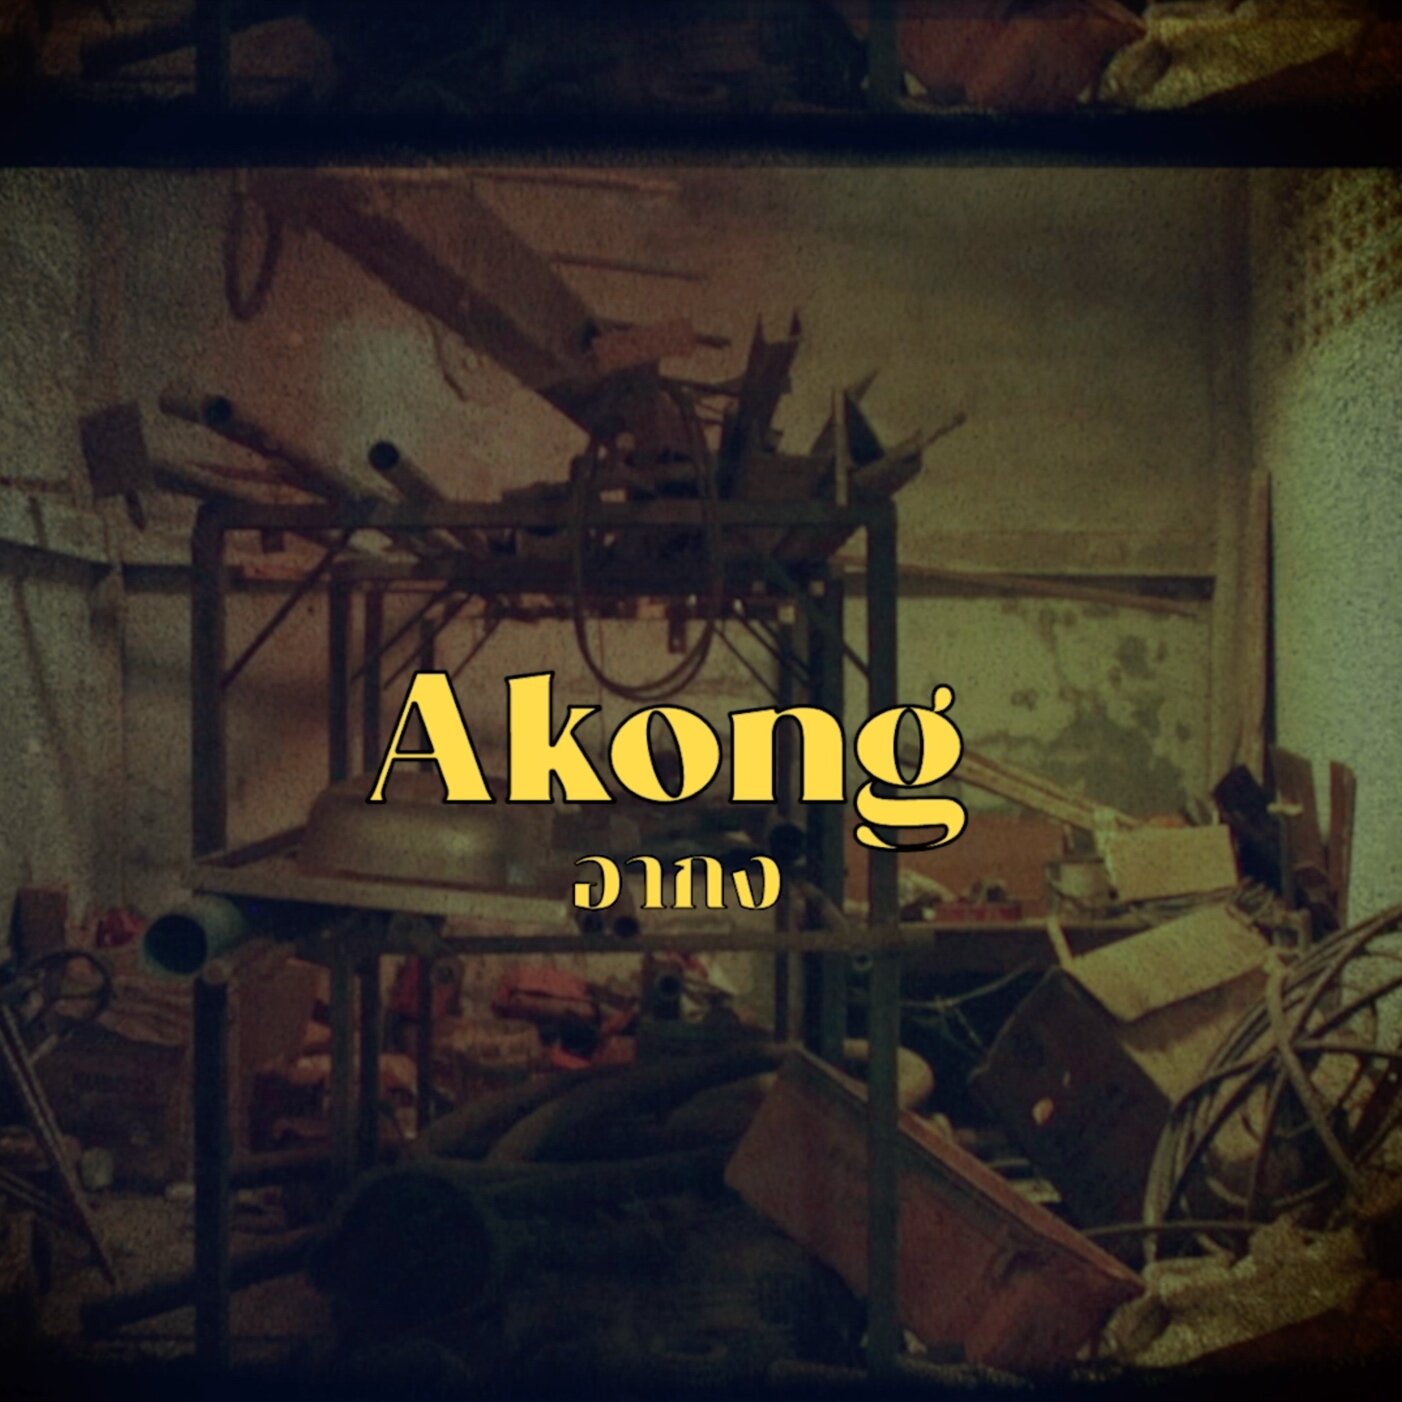 Akong